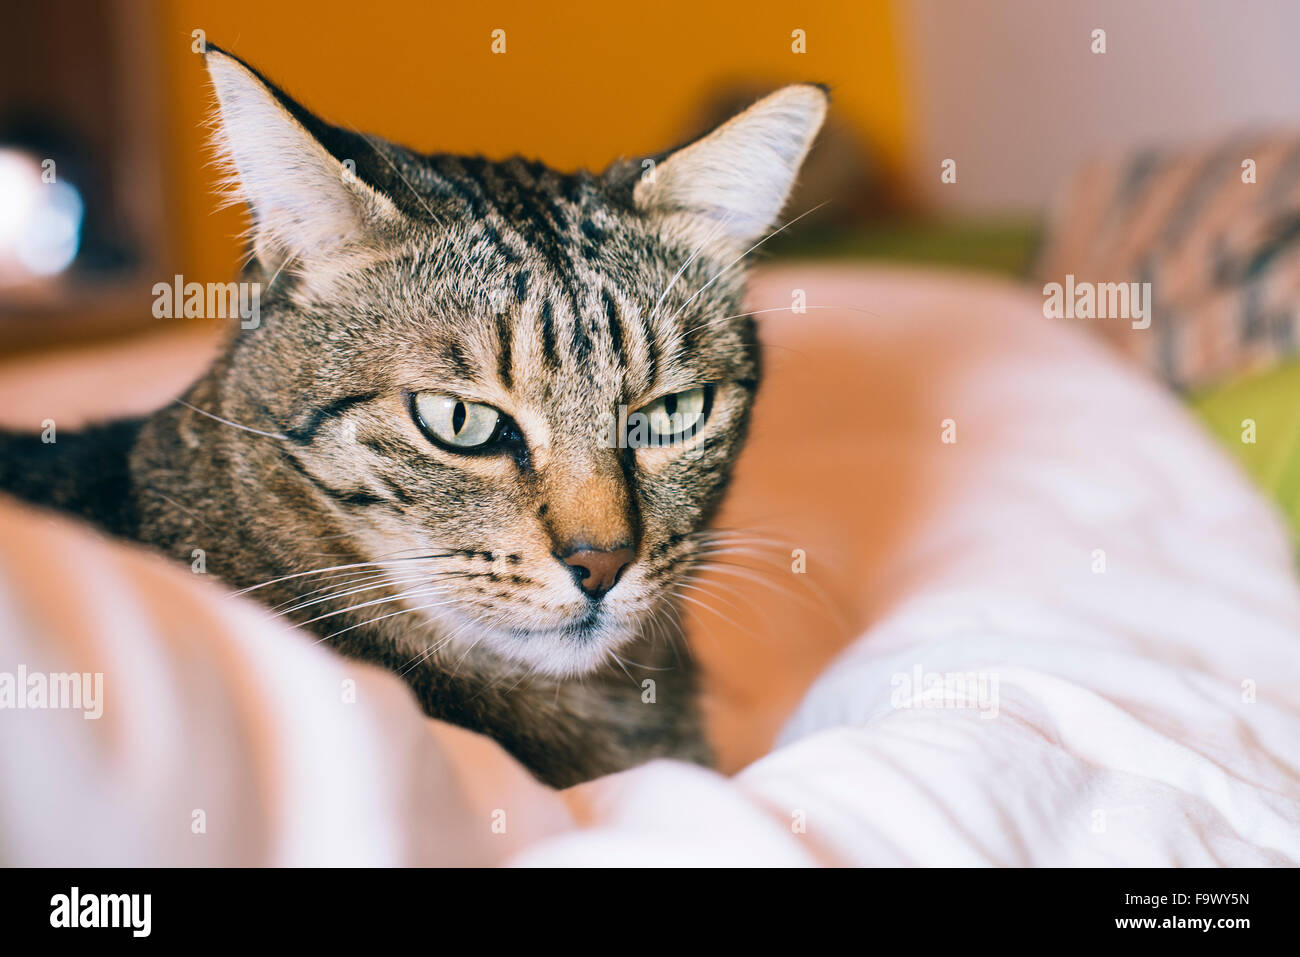 Portrait de tabby cat lying on bed Banque D'Images